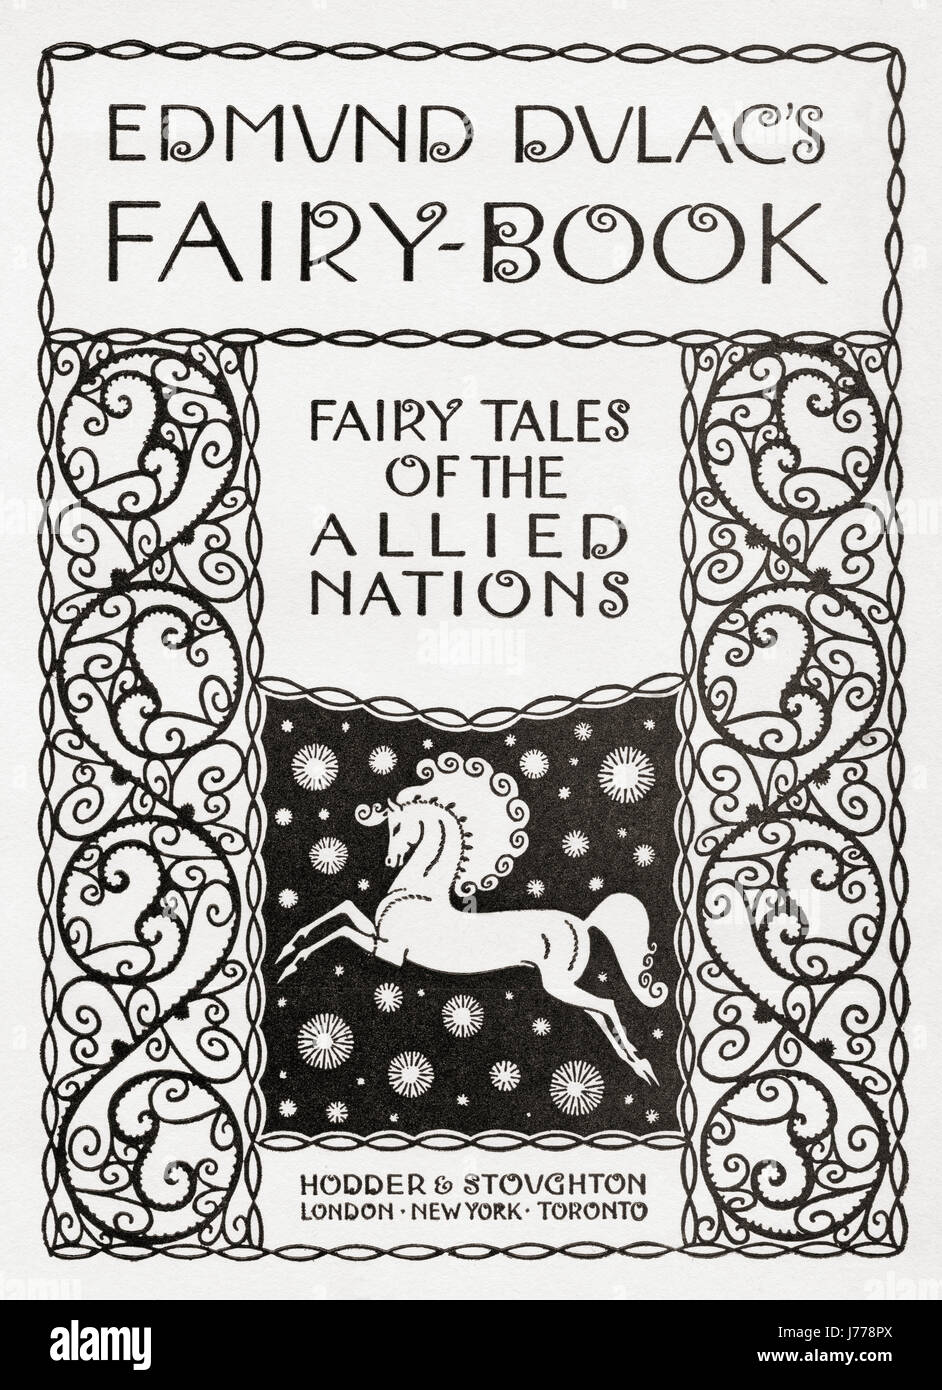 Página de título de Edmund Dulac's Fairy-Book: Cuentos de hadas de las naciones aliadas, publicado en 1916. Foto de stock